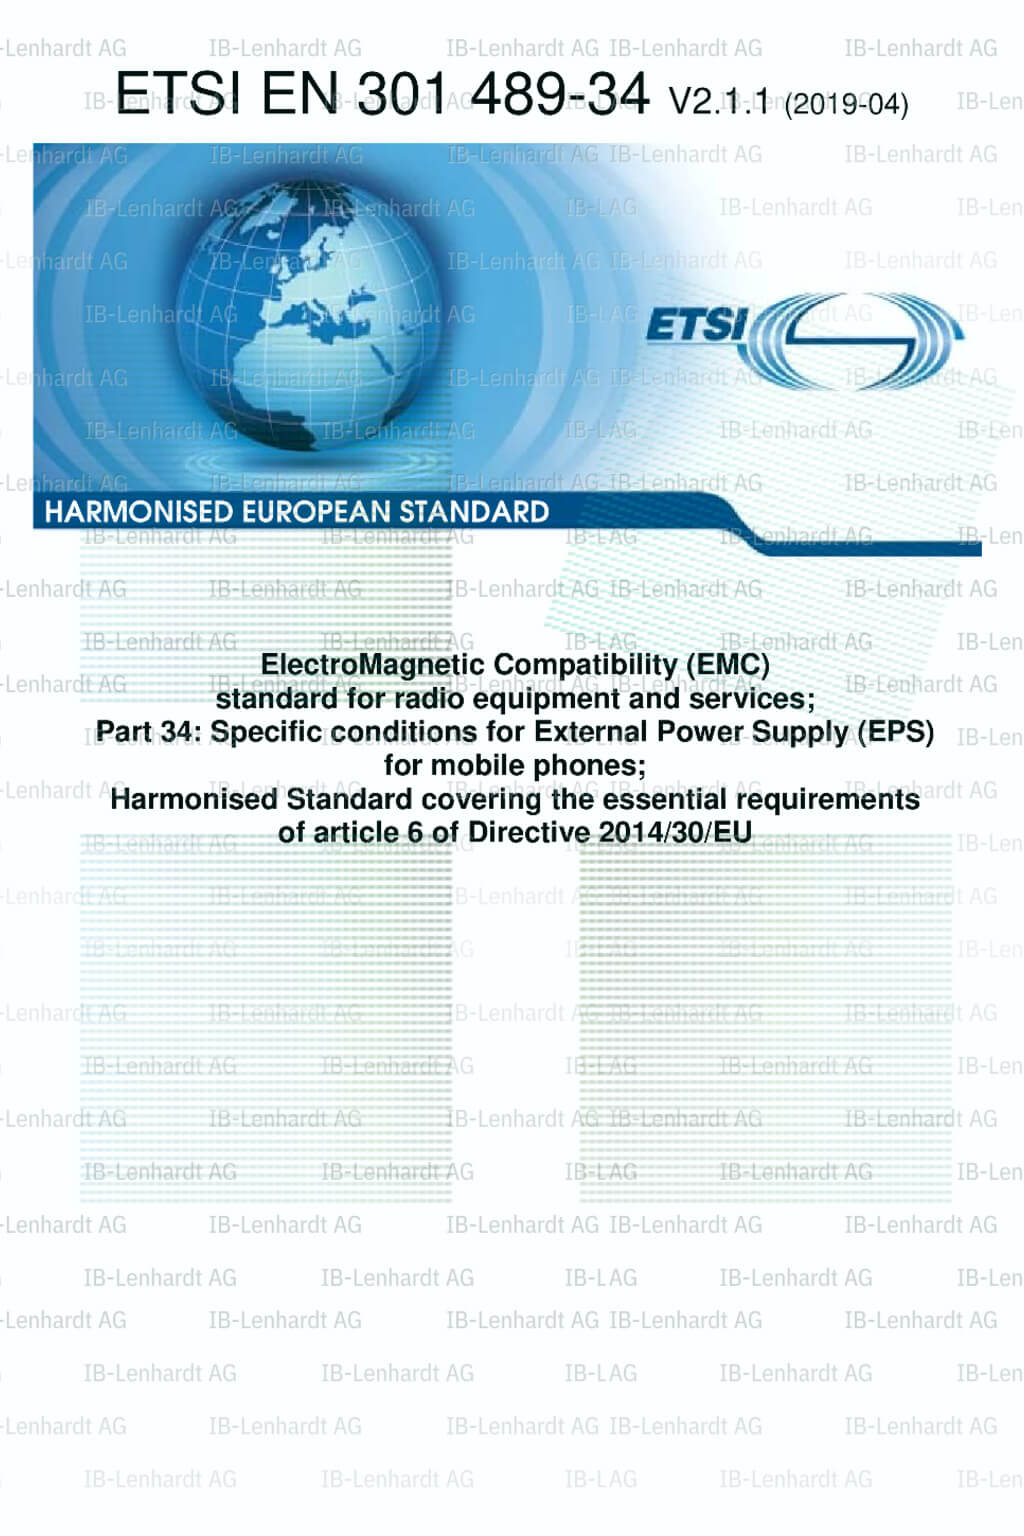 ETSI EN 301 489-34 V2.1.1